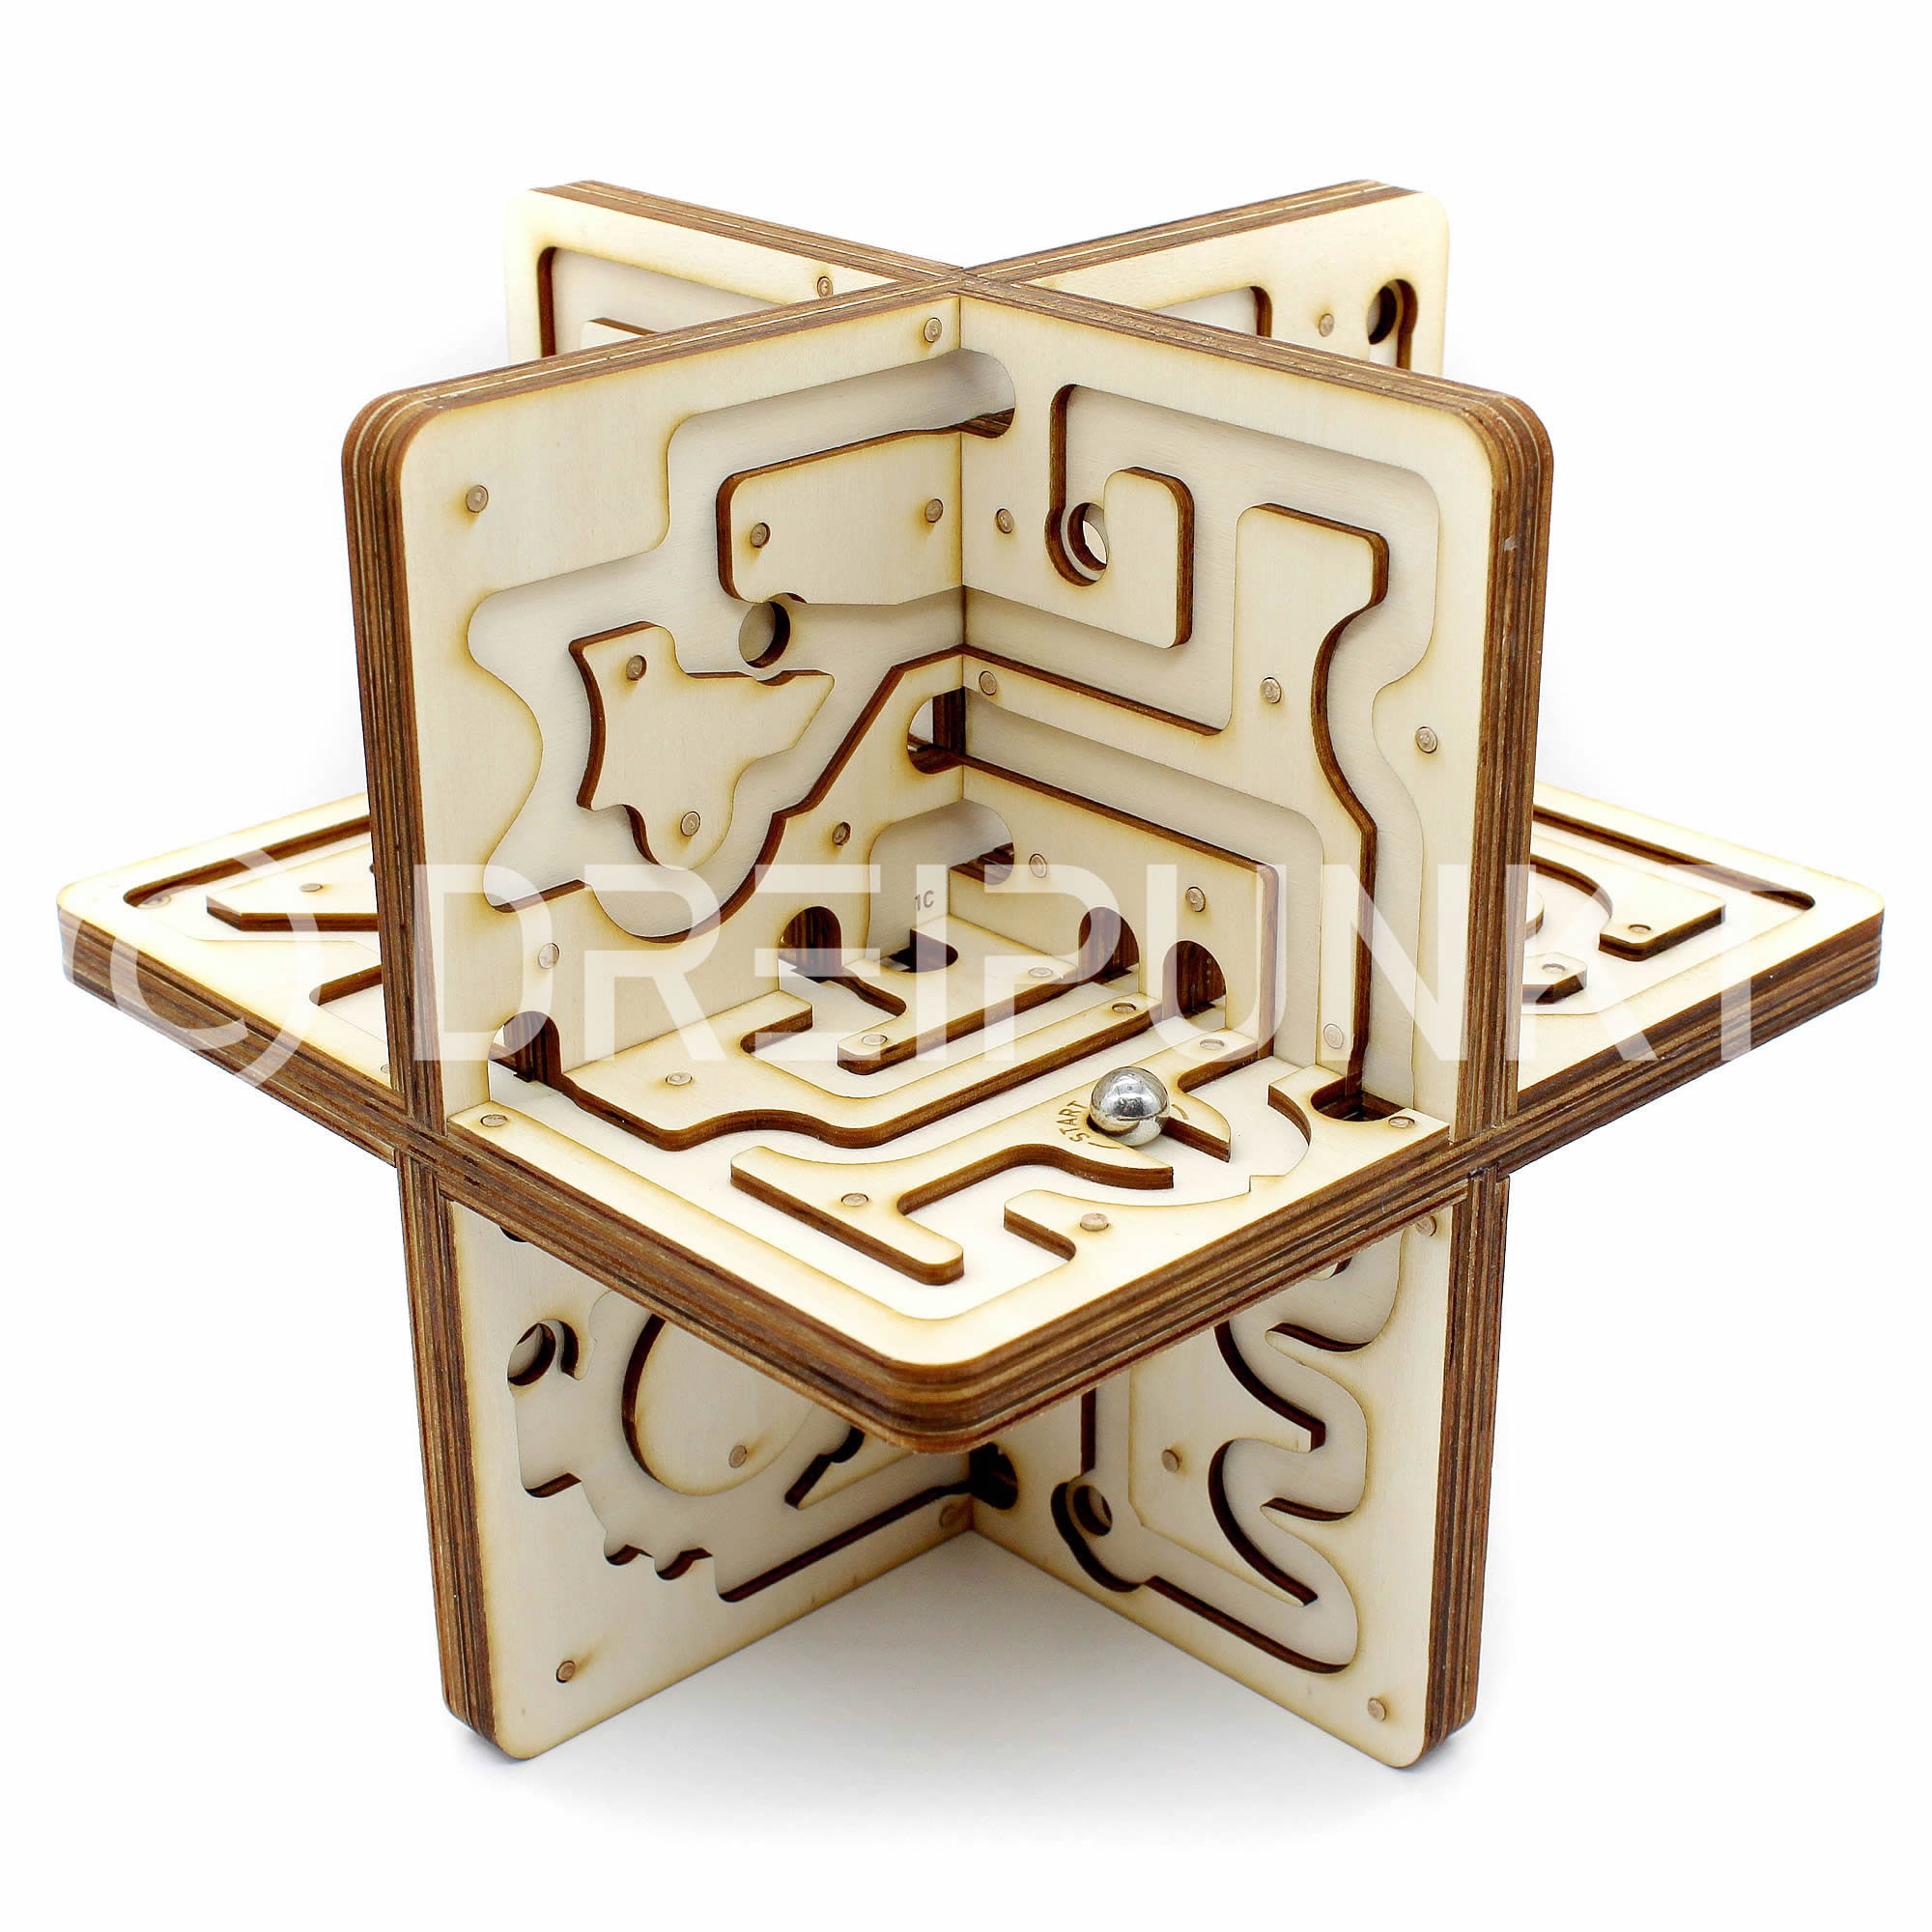 Casse-tête labyrinthe 3D en forme de boule avec 208 étapes